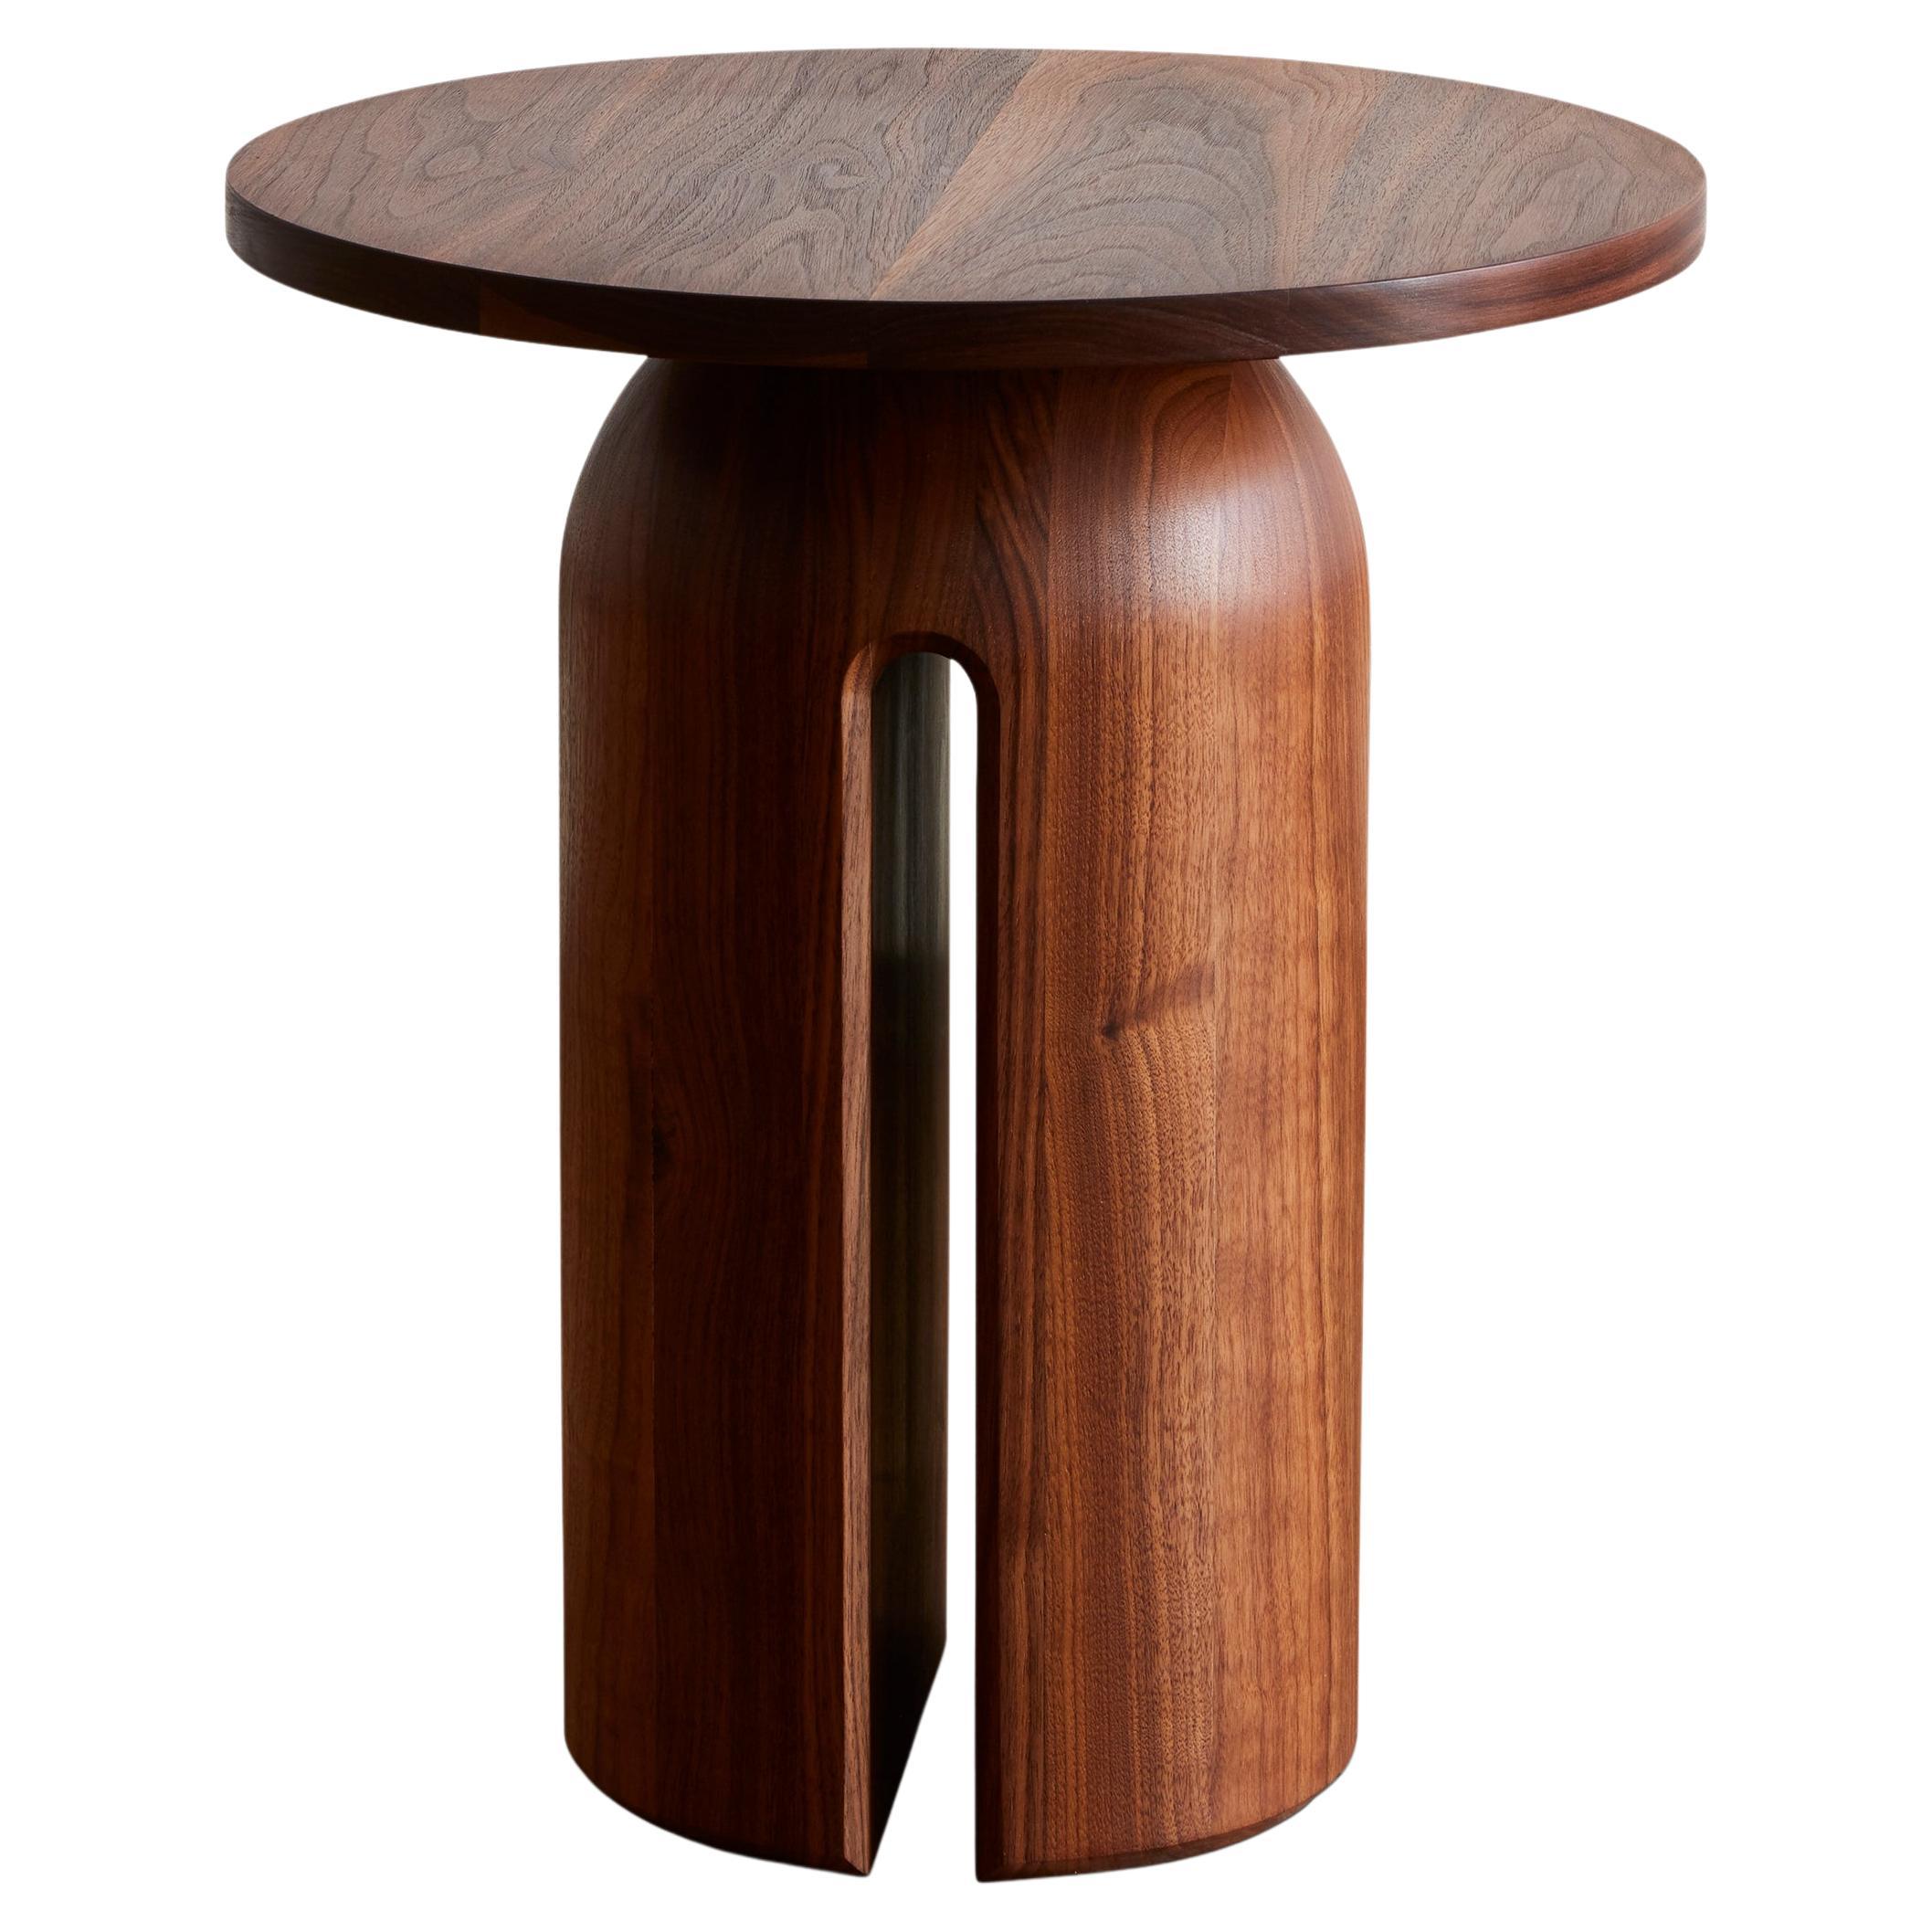 Table d'appoint contemporaine Oco en bois massif de Luteca pour l'intérieur et l'extérieur